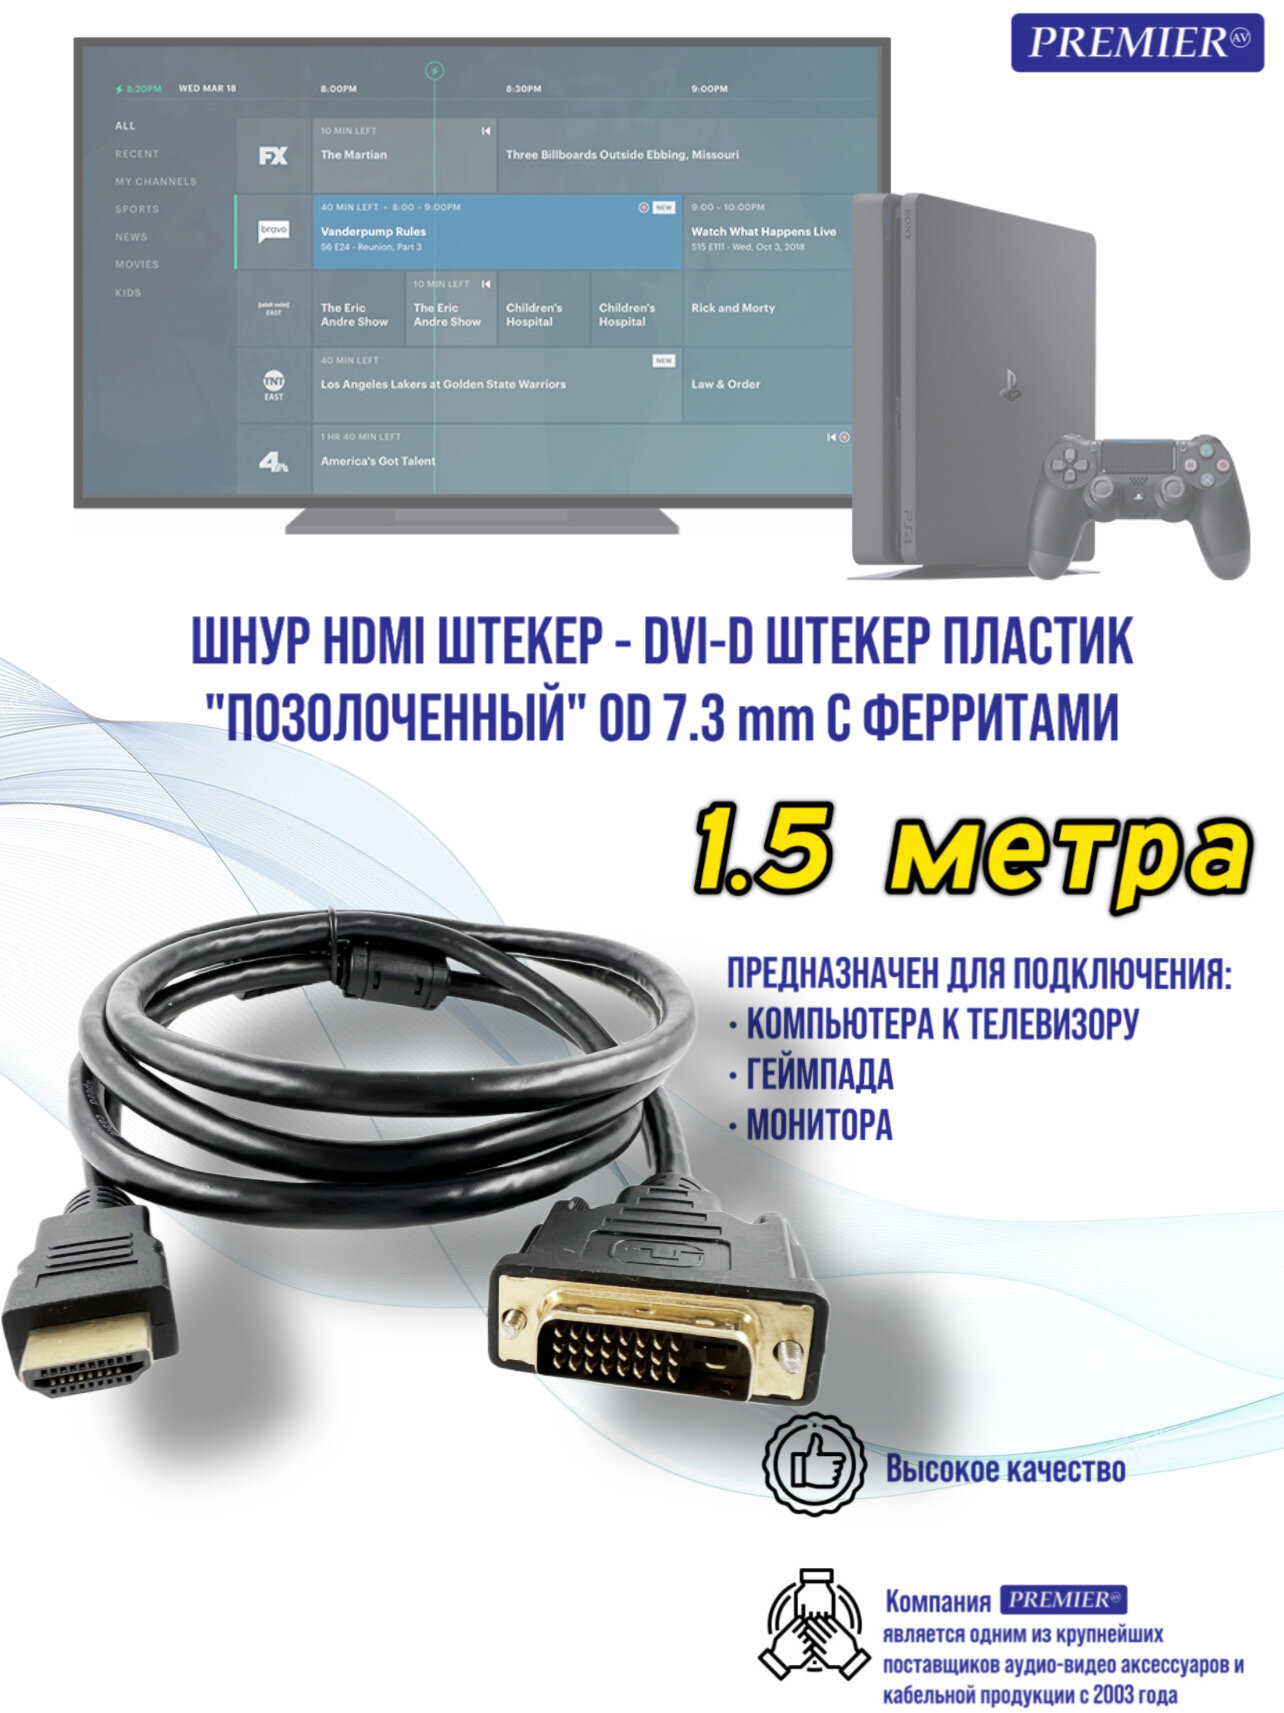 Шнур HDMI штекер - DVI-D штекер пластик "позолоченный" OD7.3мм с ферритами 1.5 метра.